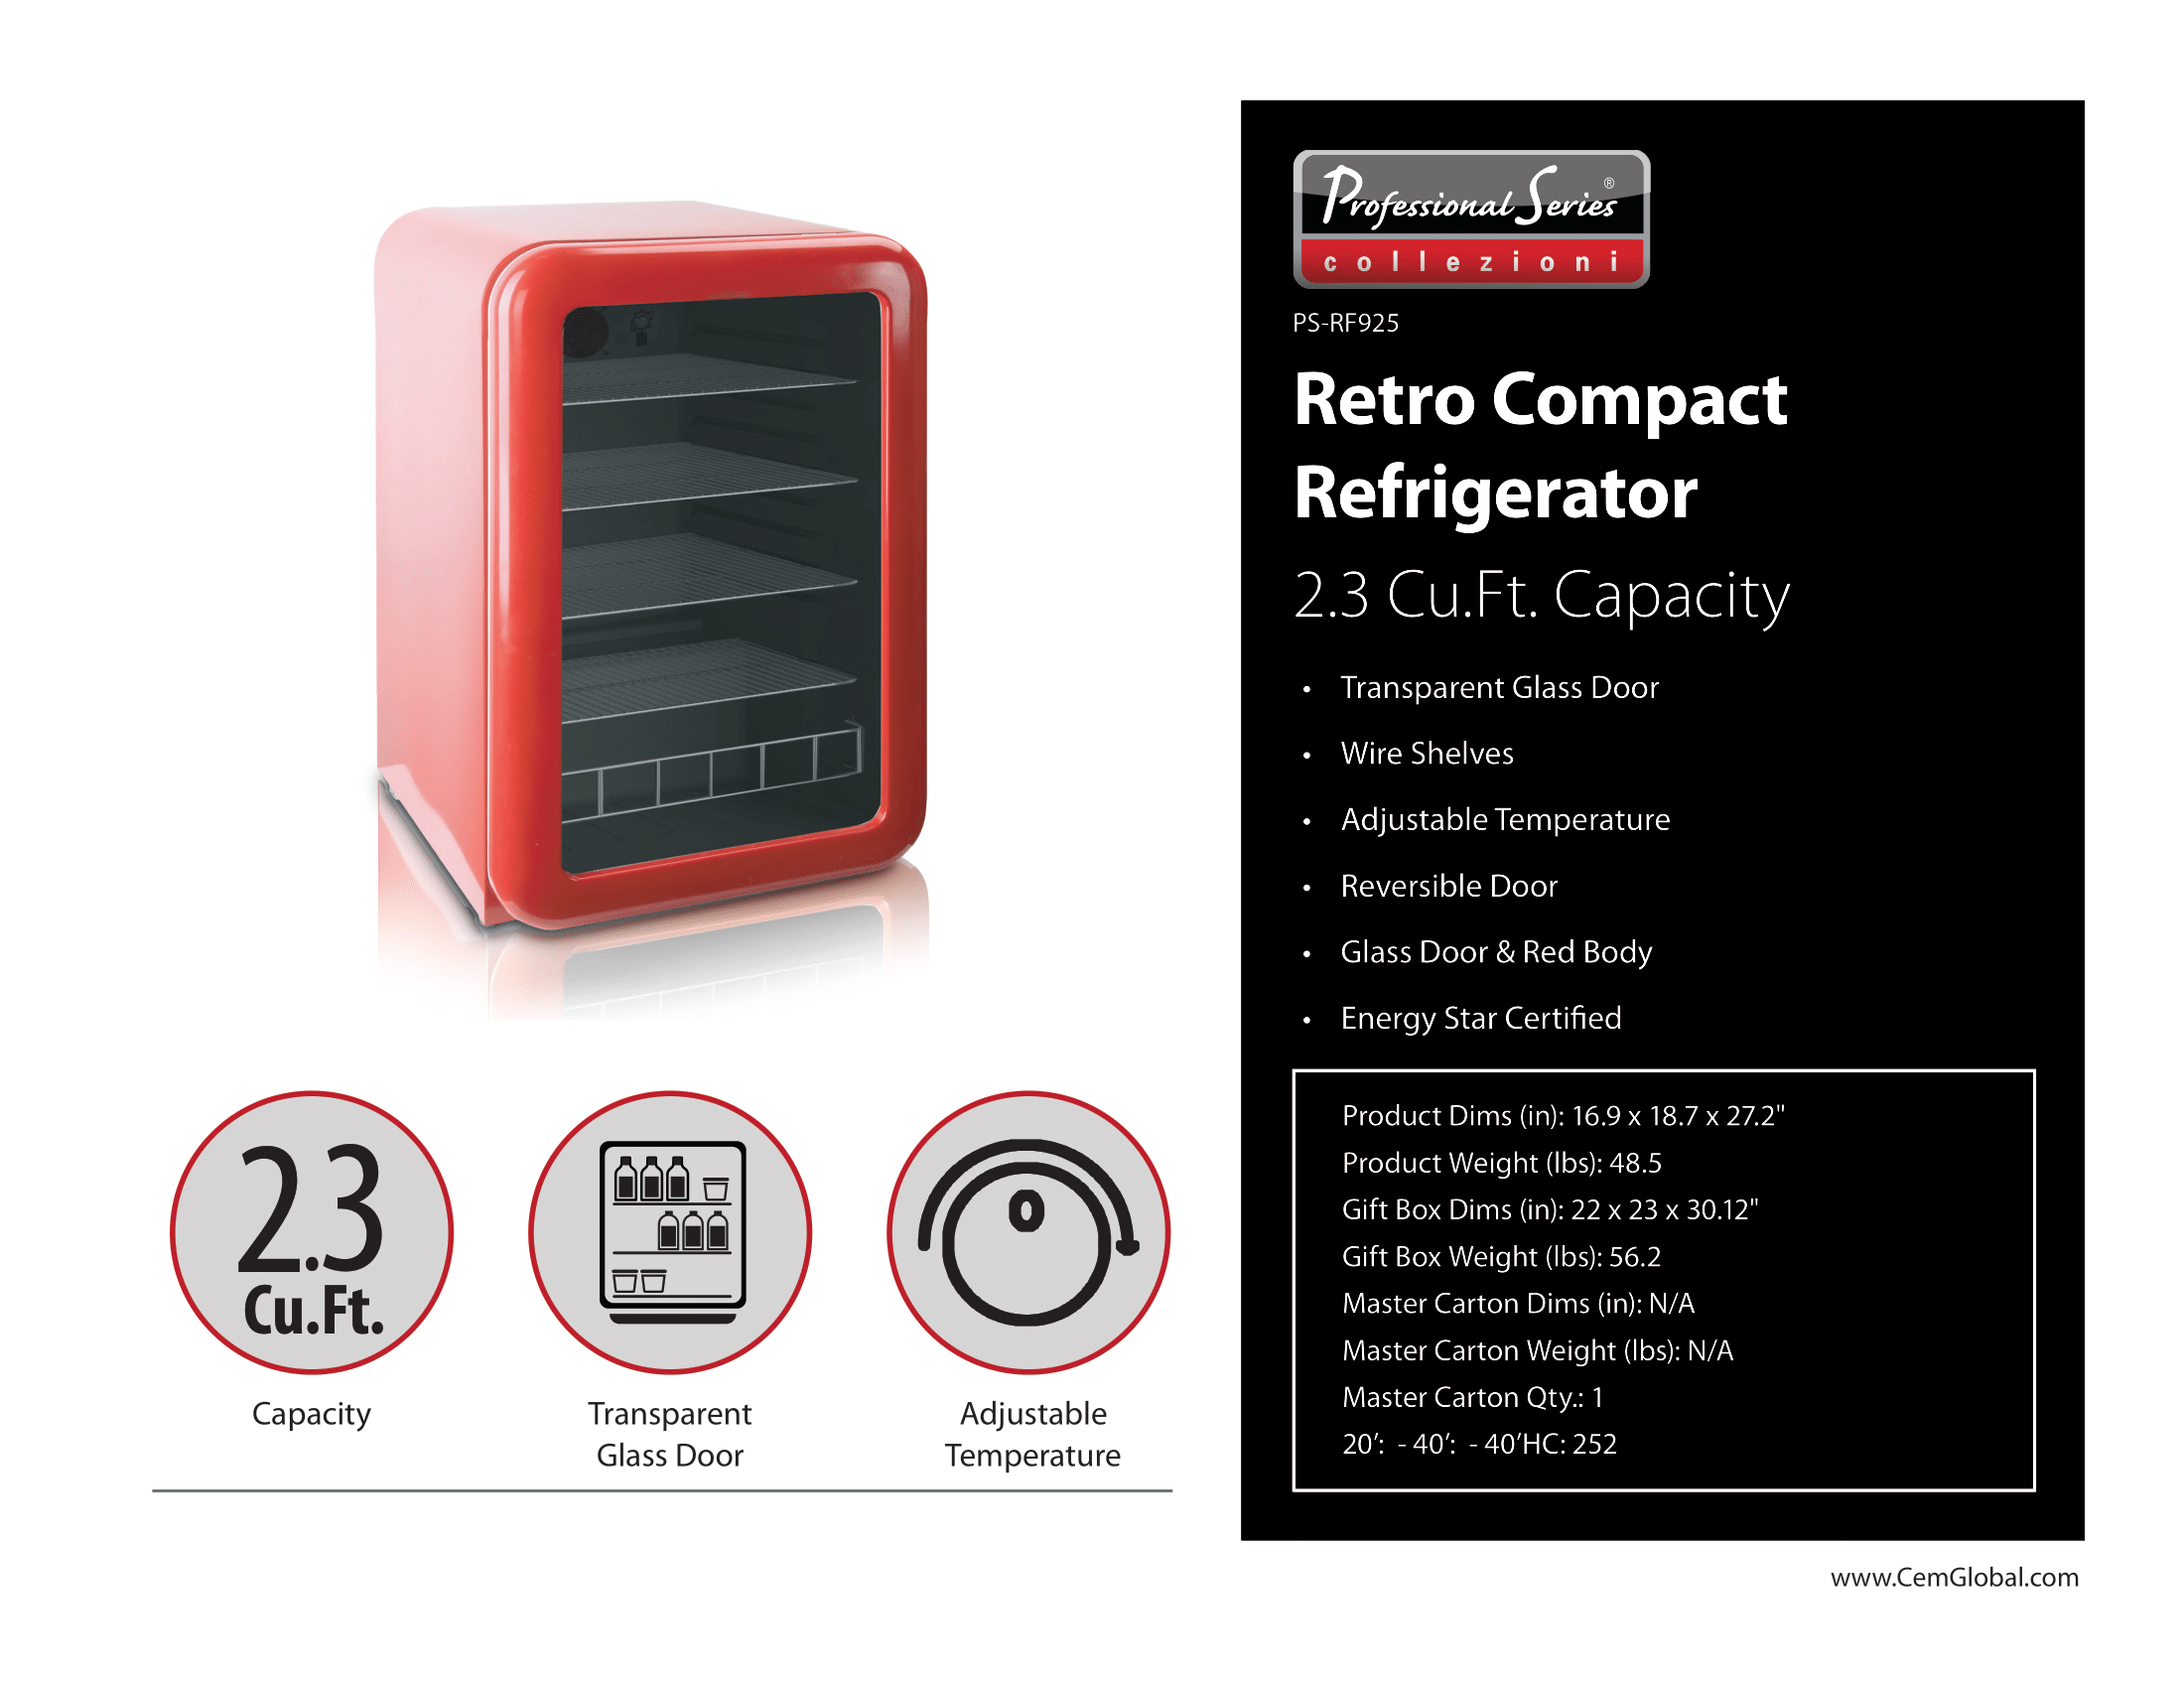 Retro Compact Refrigerator 2.3 Cu.Ft.